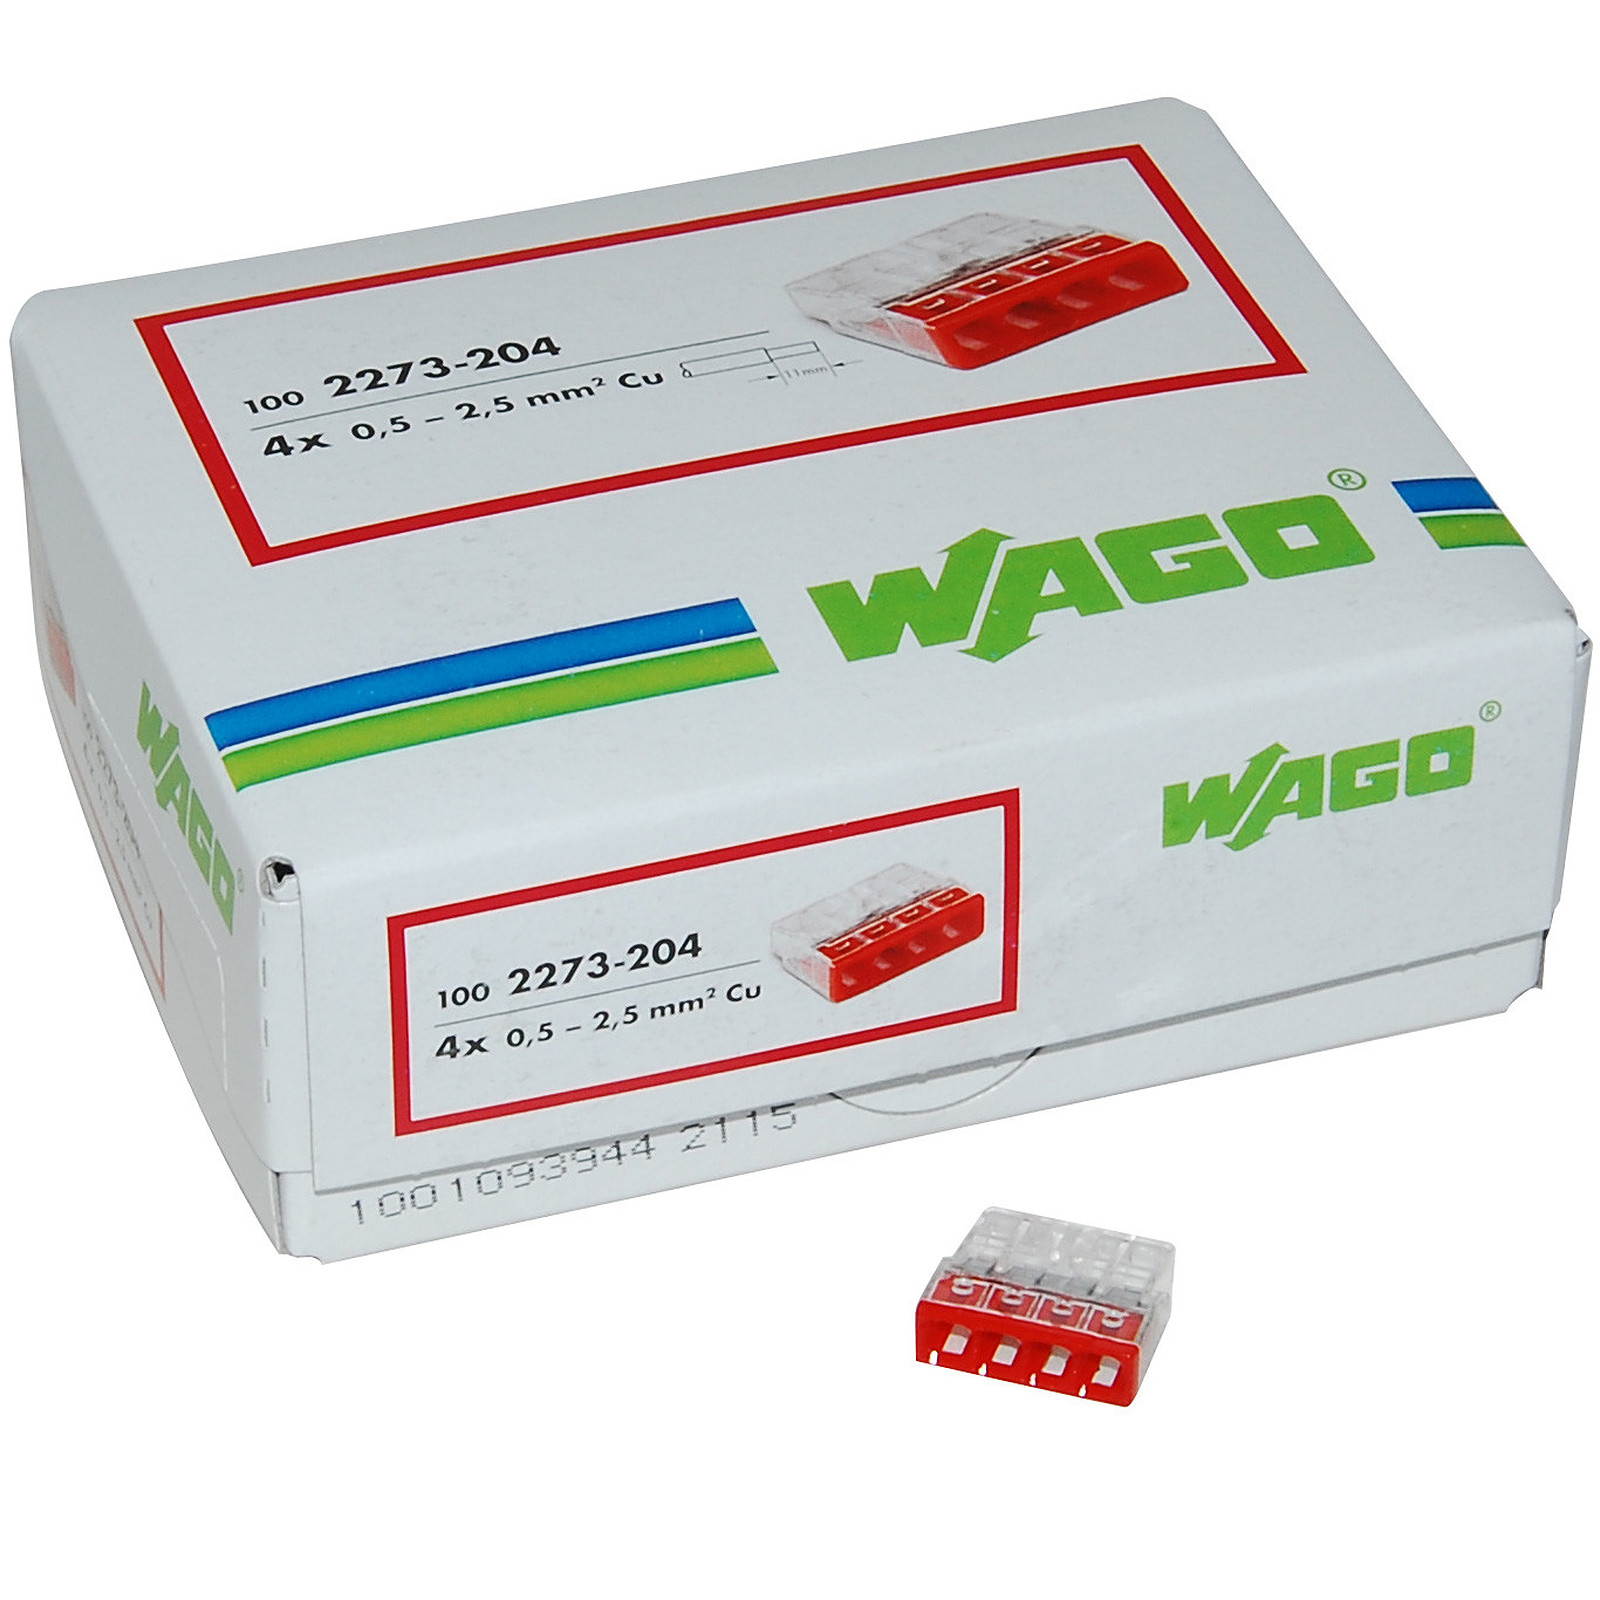 Wago Lot De 100x Connexions Automatiques 4 Bornes WAG_2273204_LOT100 - Prise connectee Wago